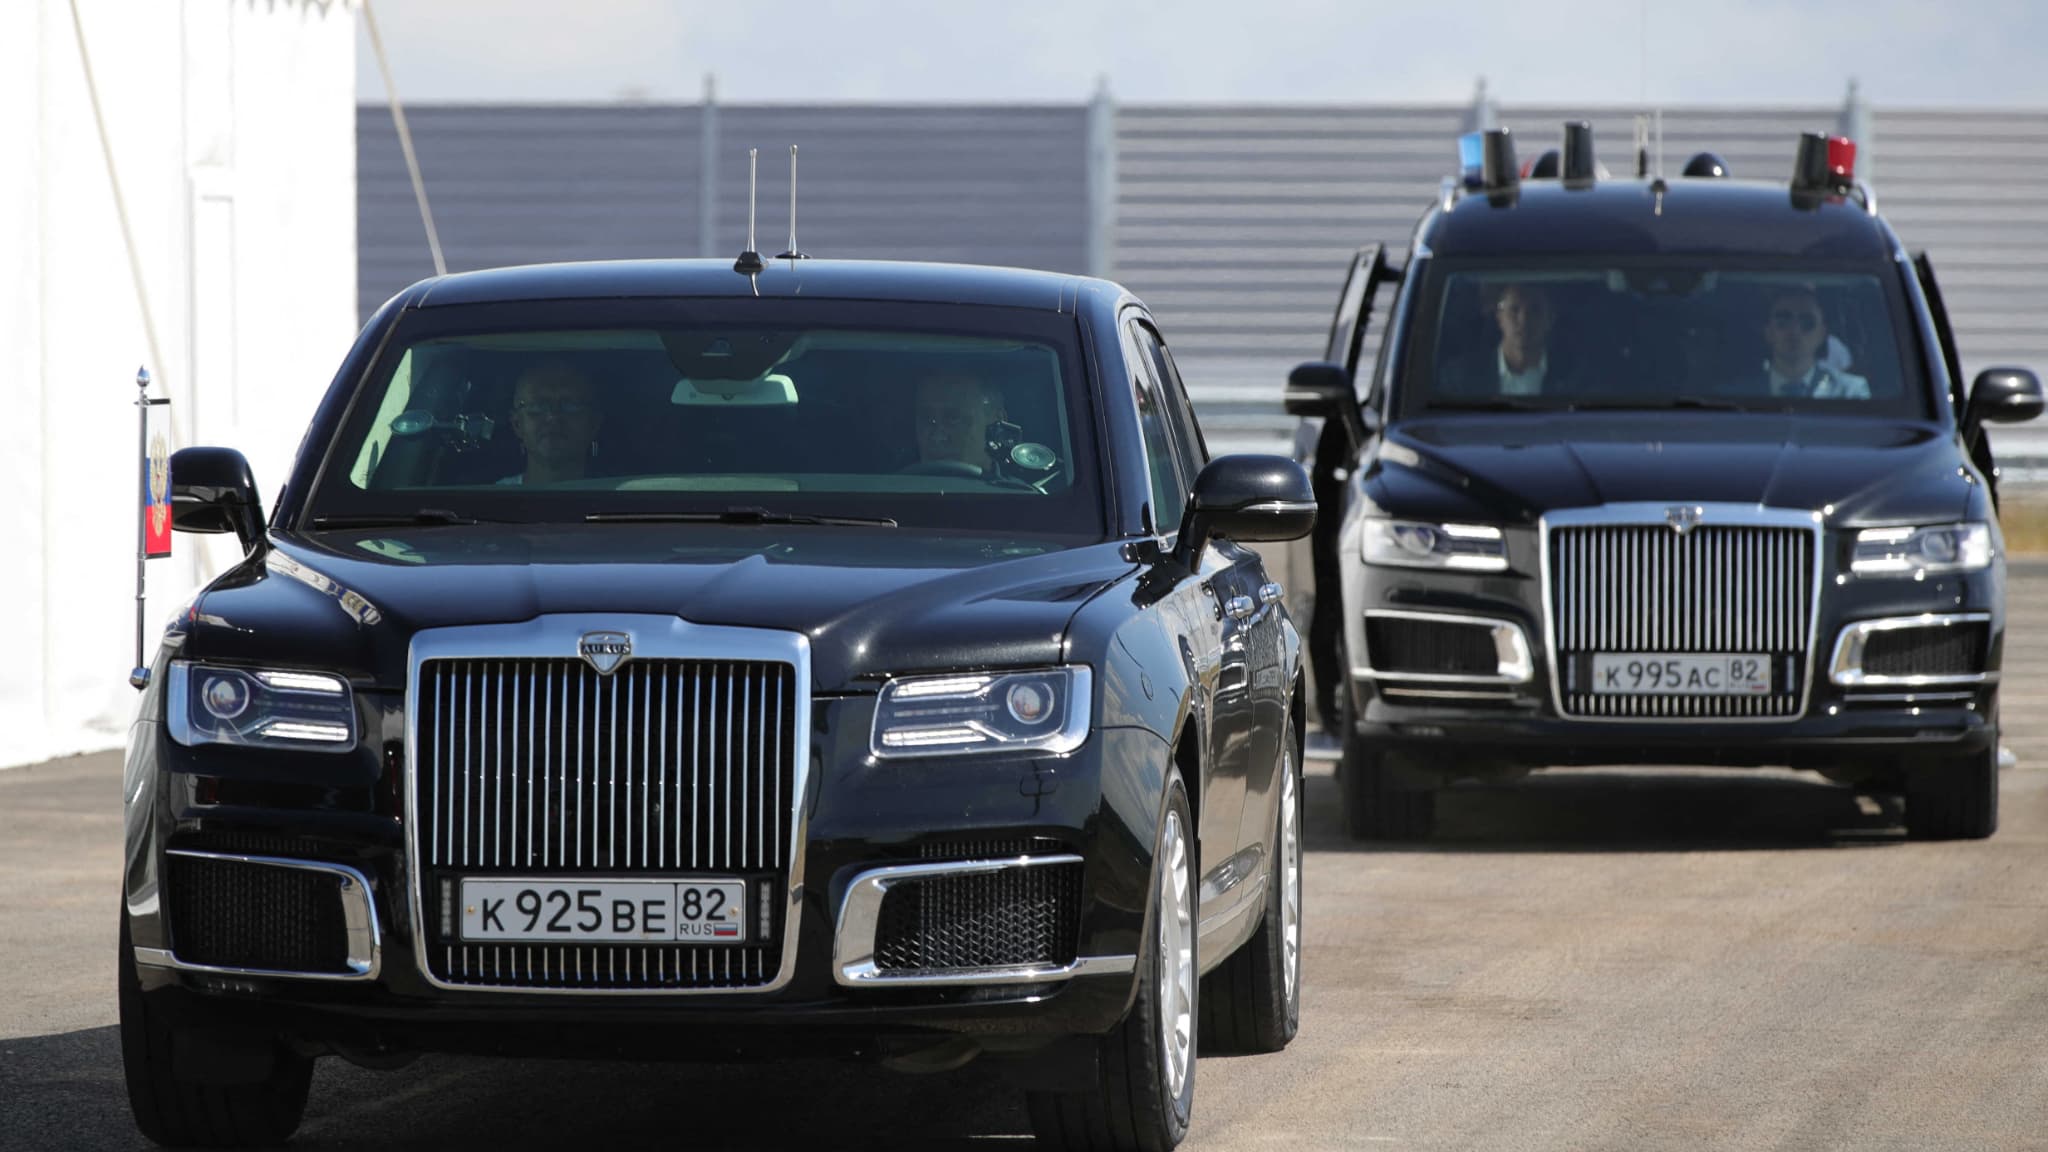 Kim Jong Un is ontevreden over de luxe Russische auto die Vladimir Poetin hem heeft gegeven